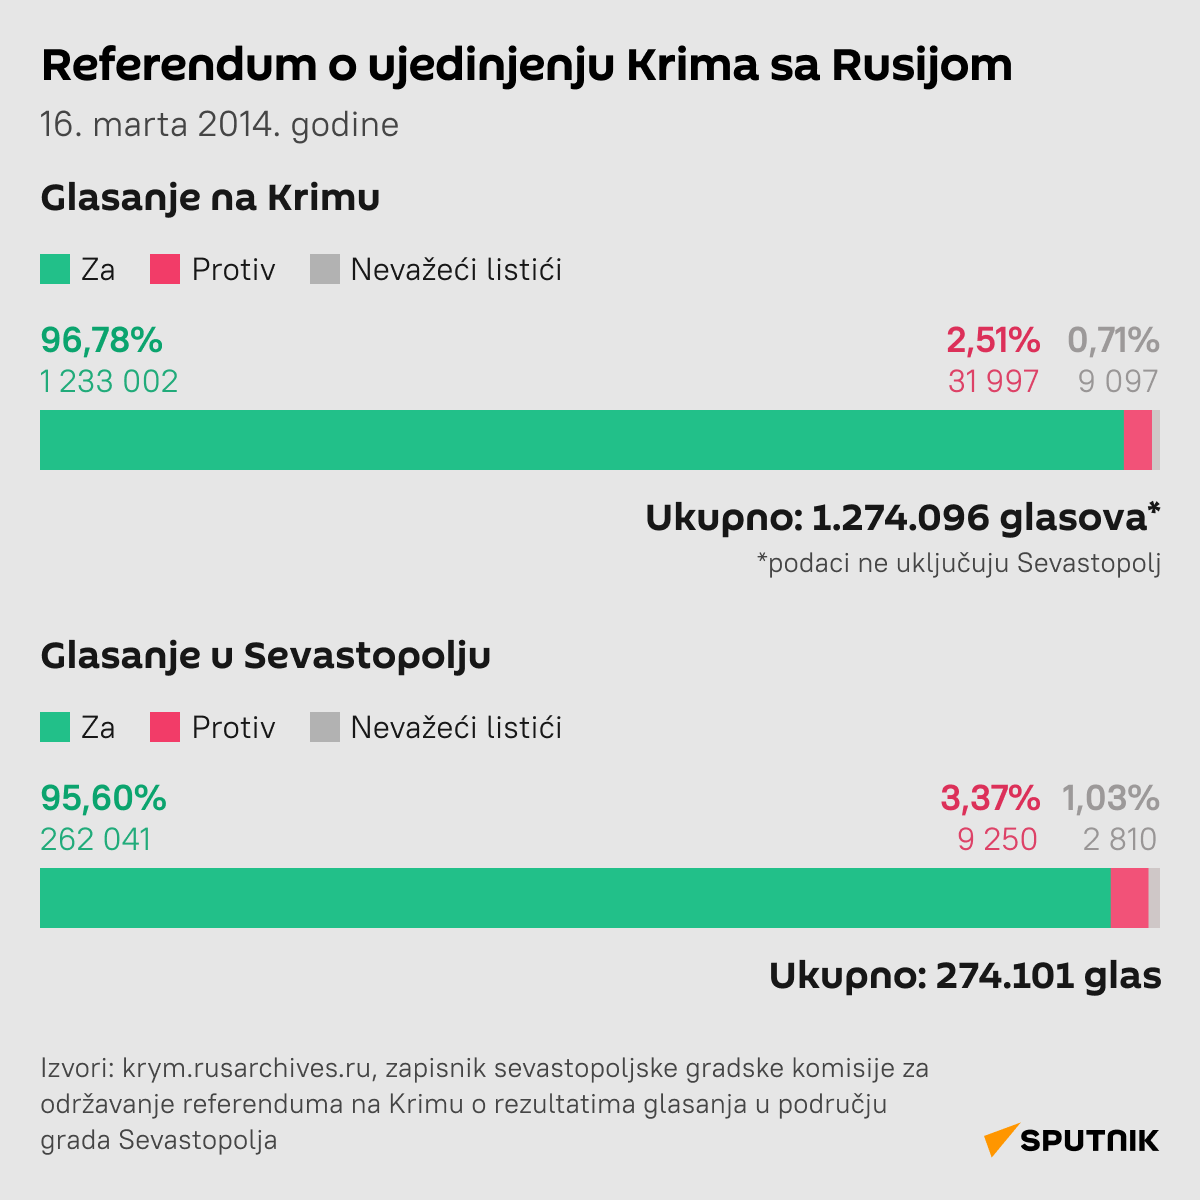 Referendum na Krimu - Sputnik Srbija